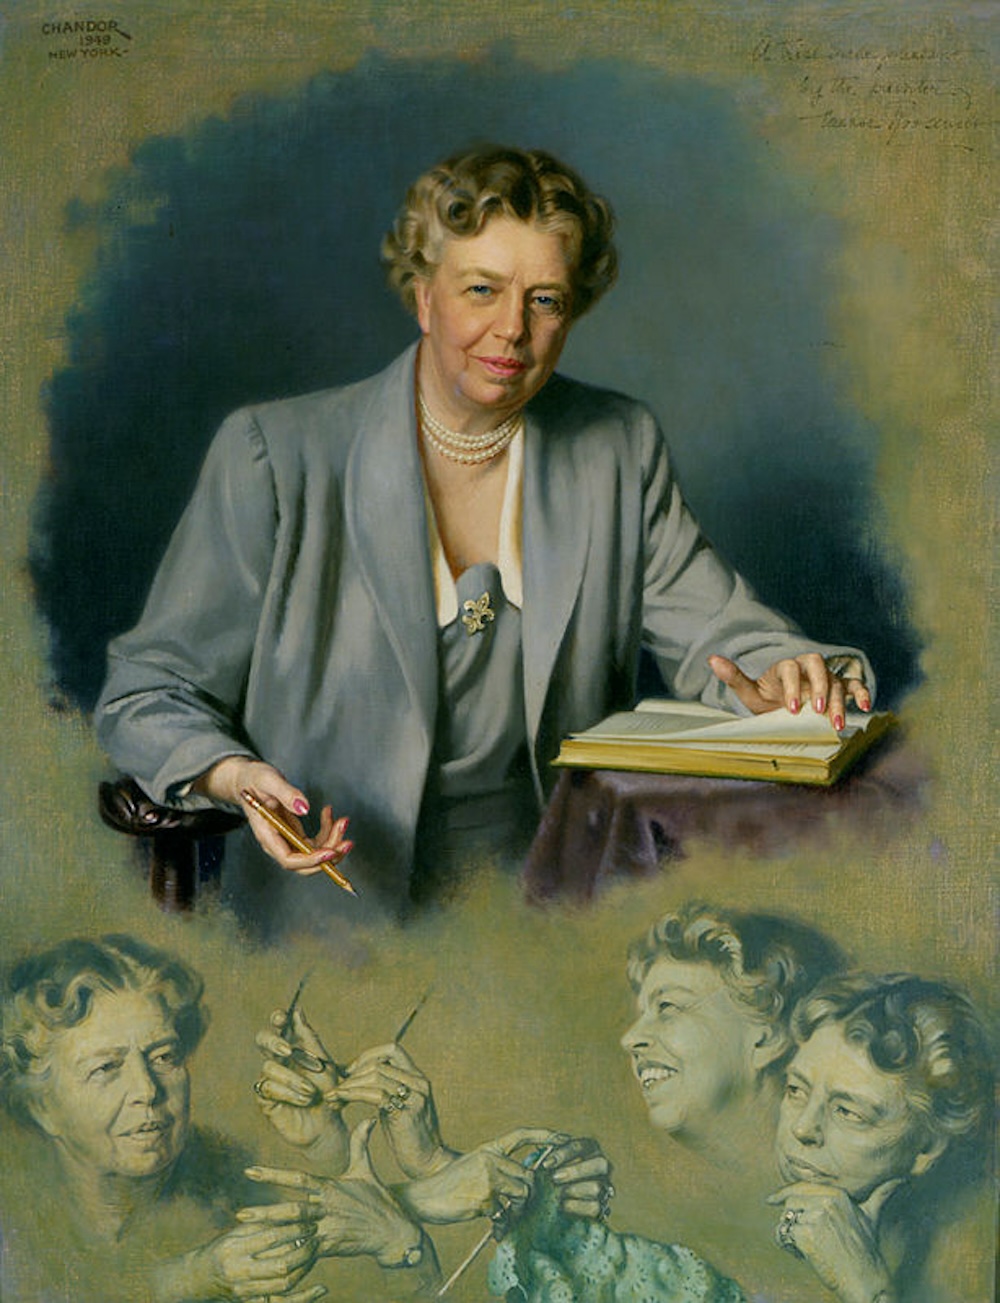 Eleanor Roosevelt Douglas Chandor 1949 White House Association